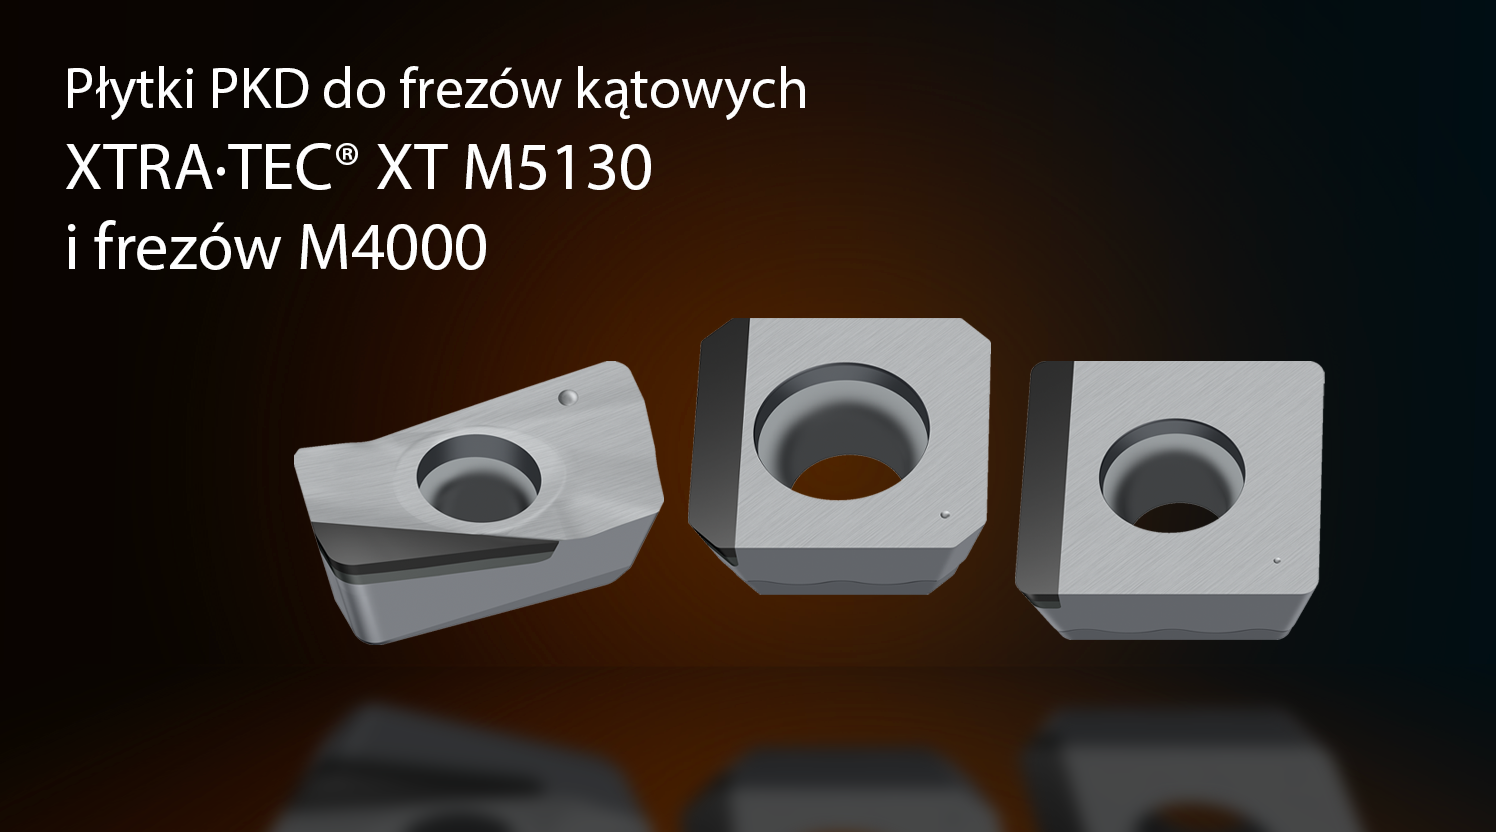 Płytki PKD do frezów kątowych XTRA·TEC® XT M5130 i frezów M4000 w sklepie narzędziowym w toruniu